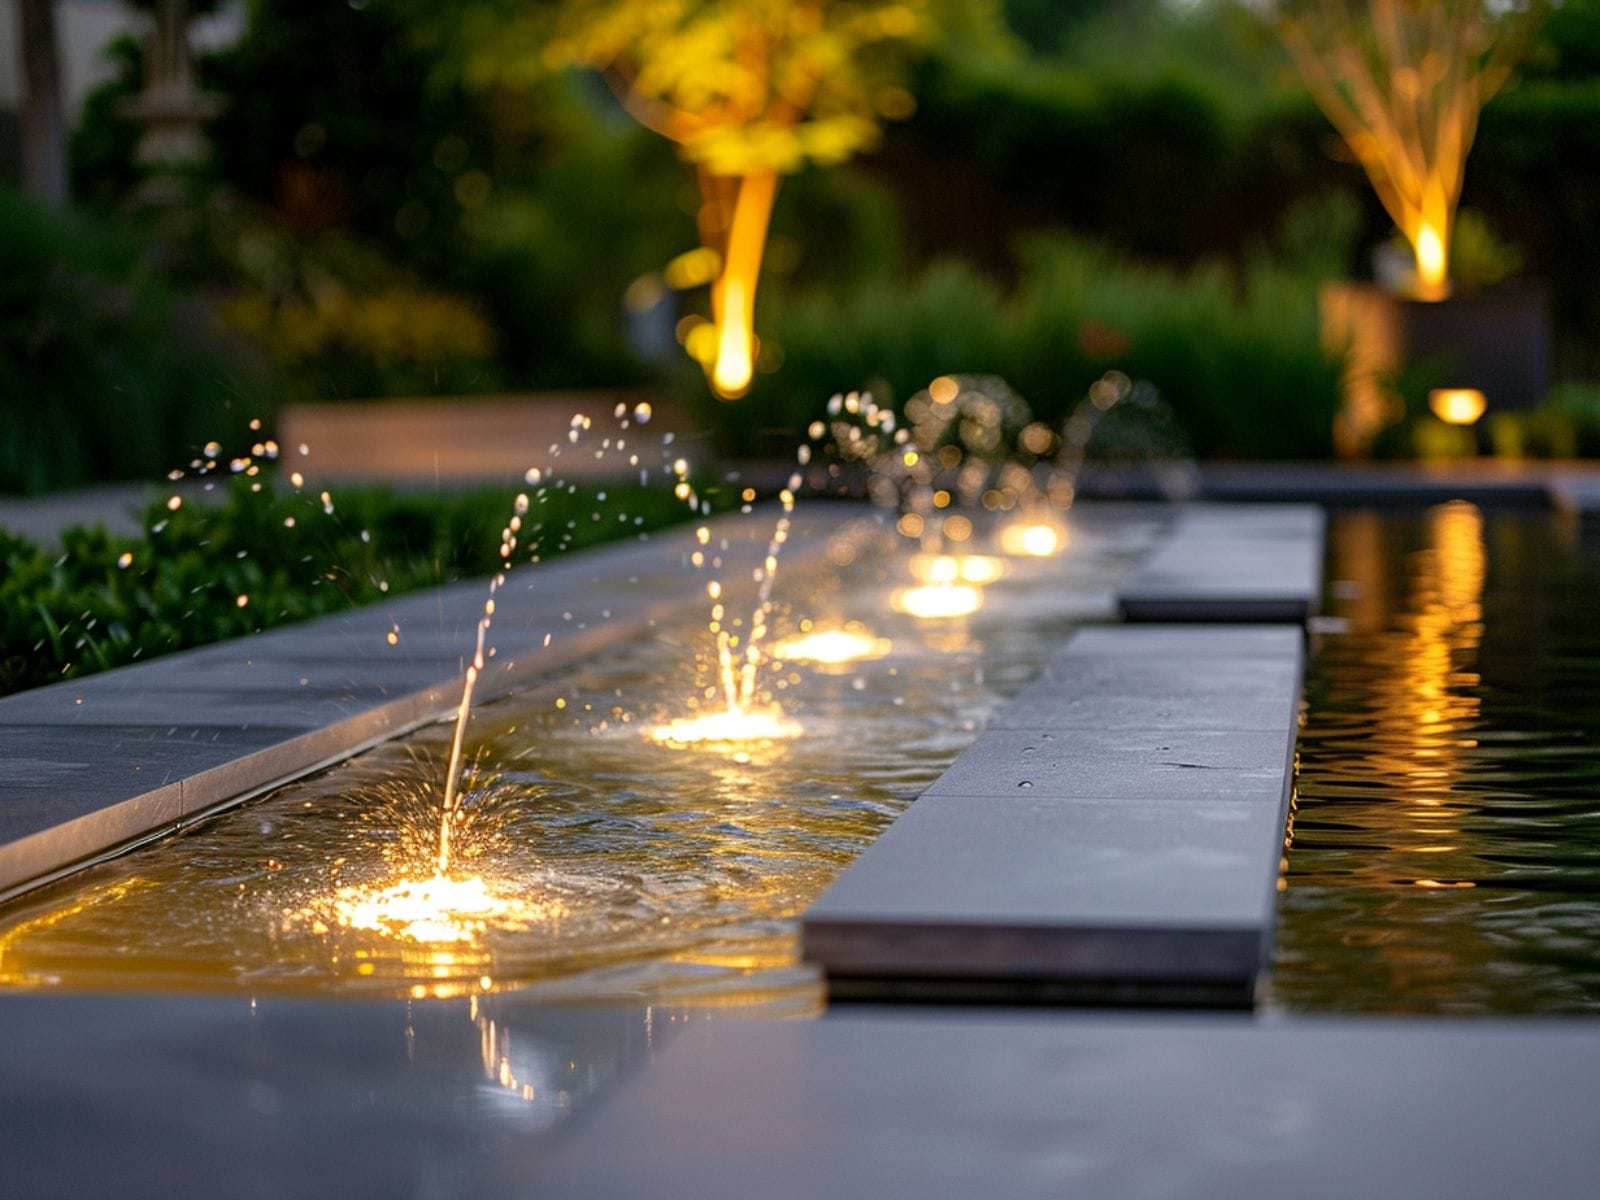 Submersible lights illuminating a garden fountain